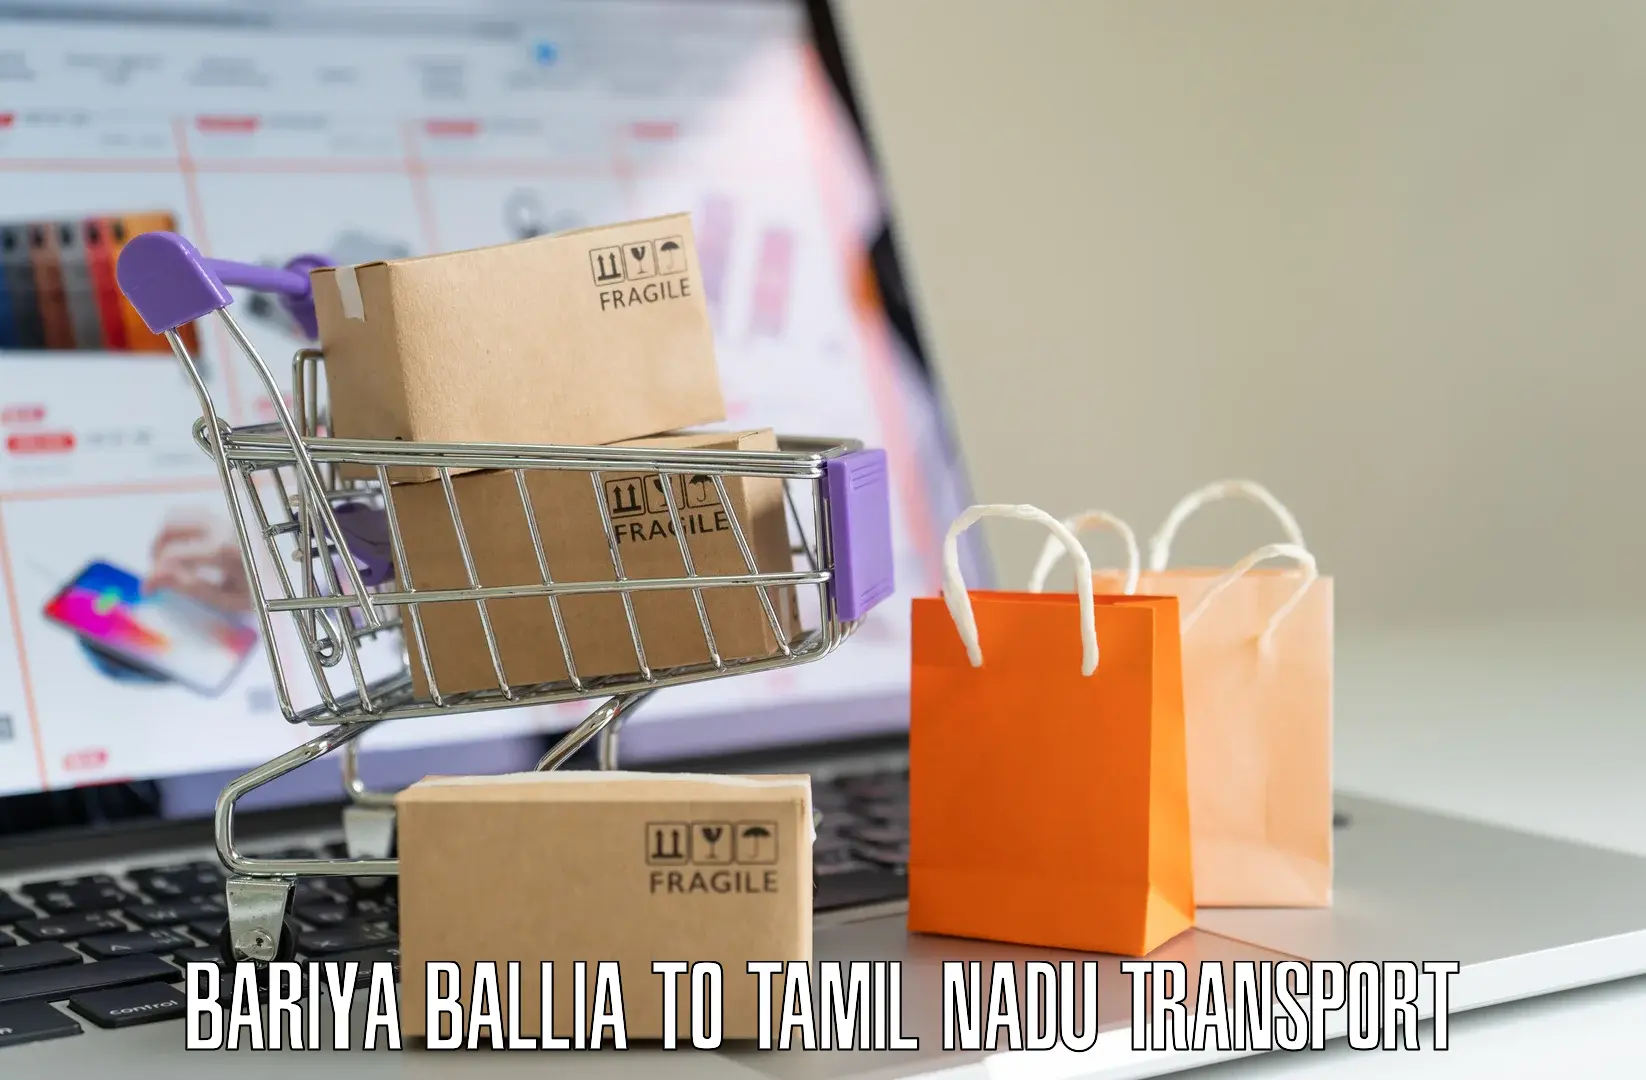 Transport shared services Bariya Ballia to Avadi